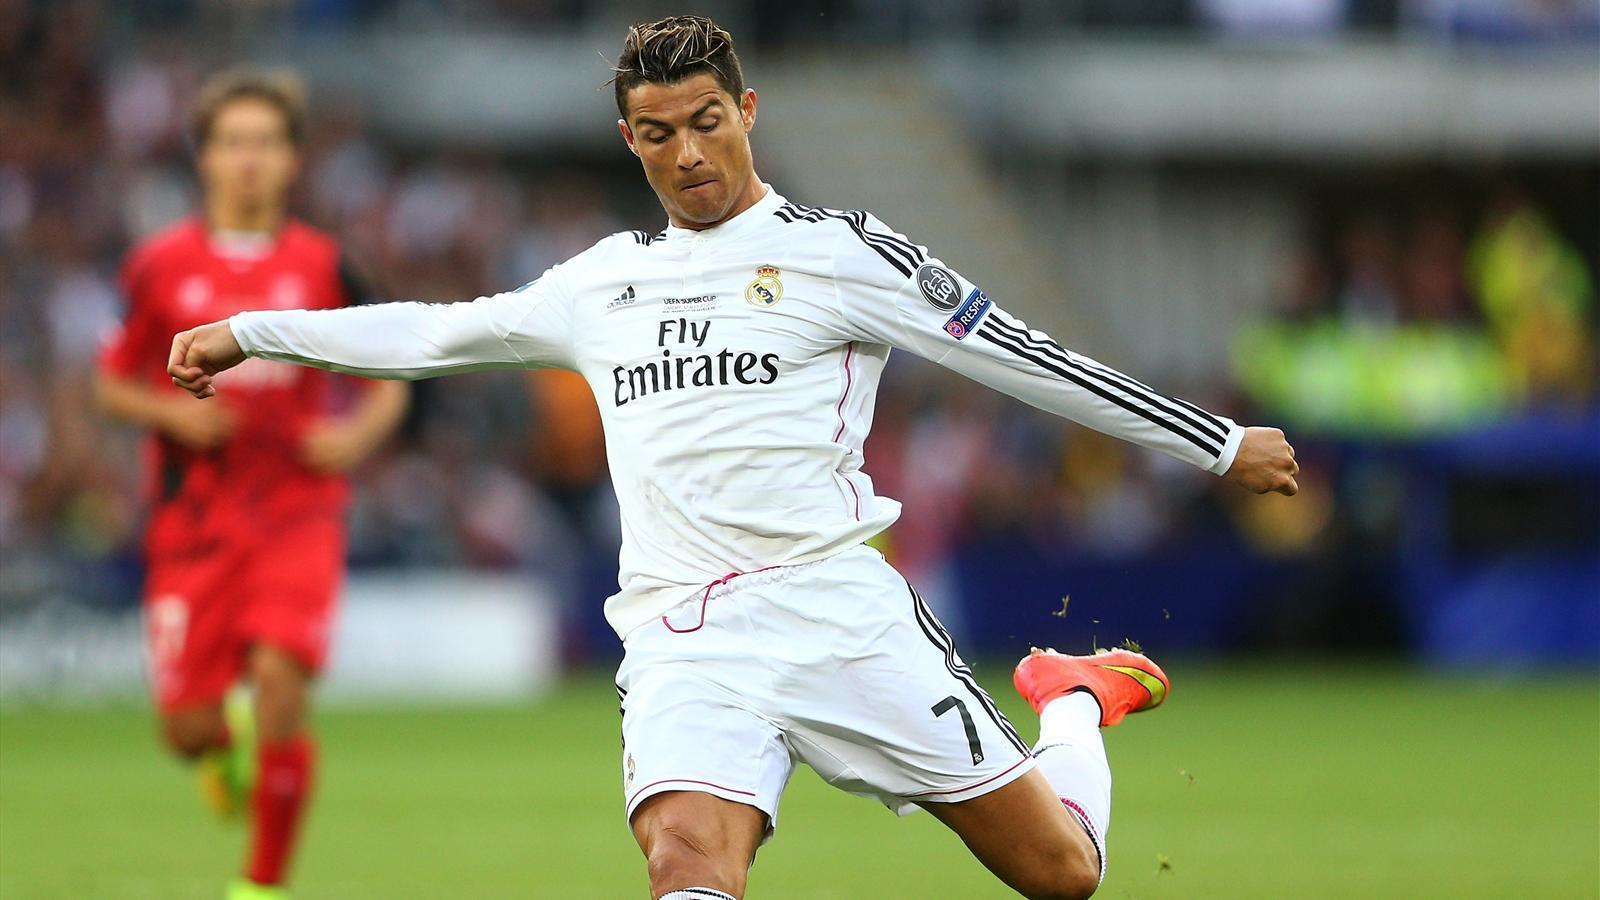 Ronaldo double sees Madrid easily overcome Sevilla